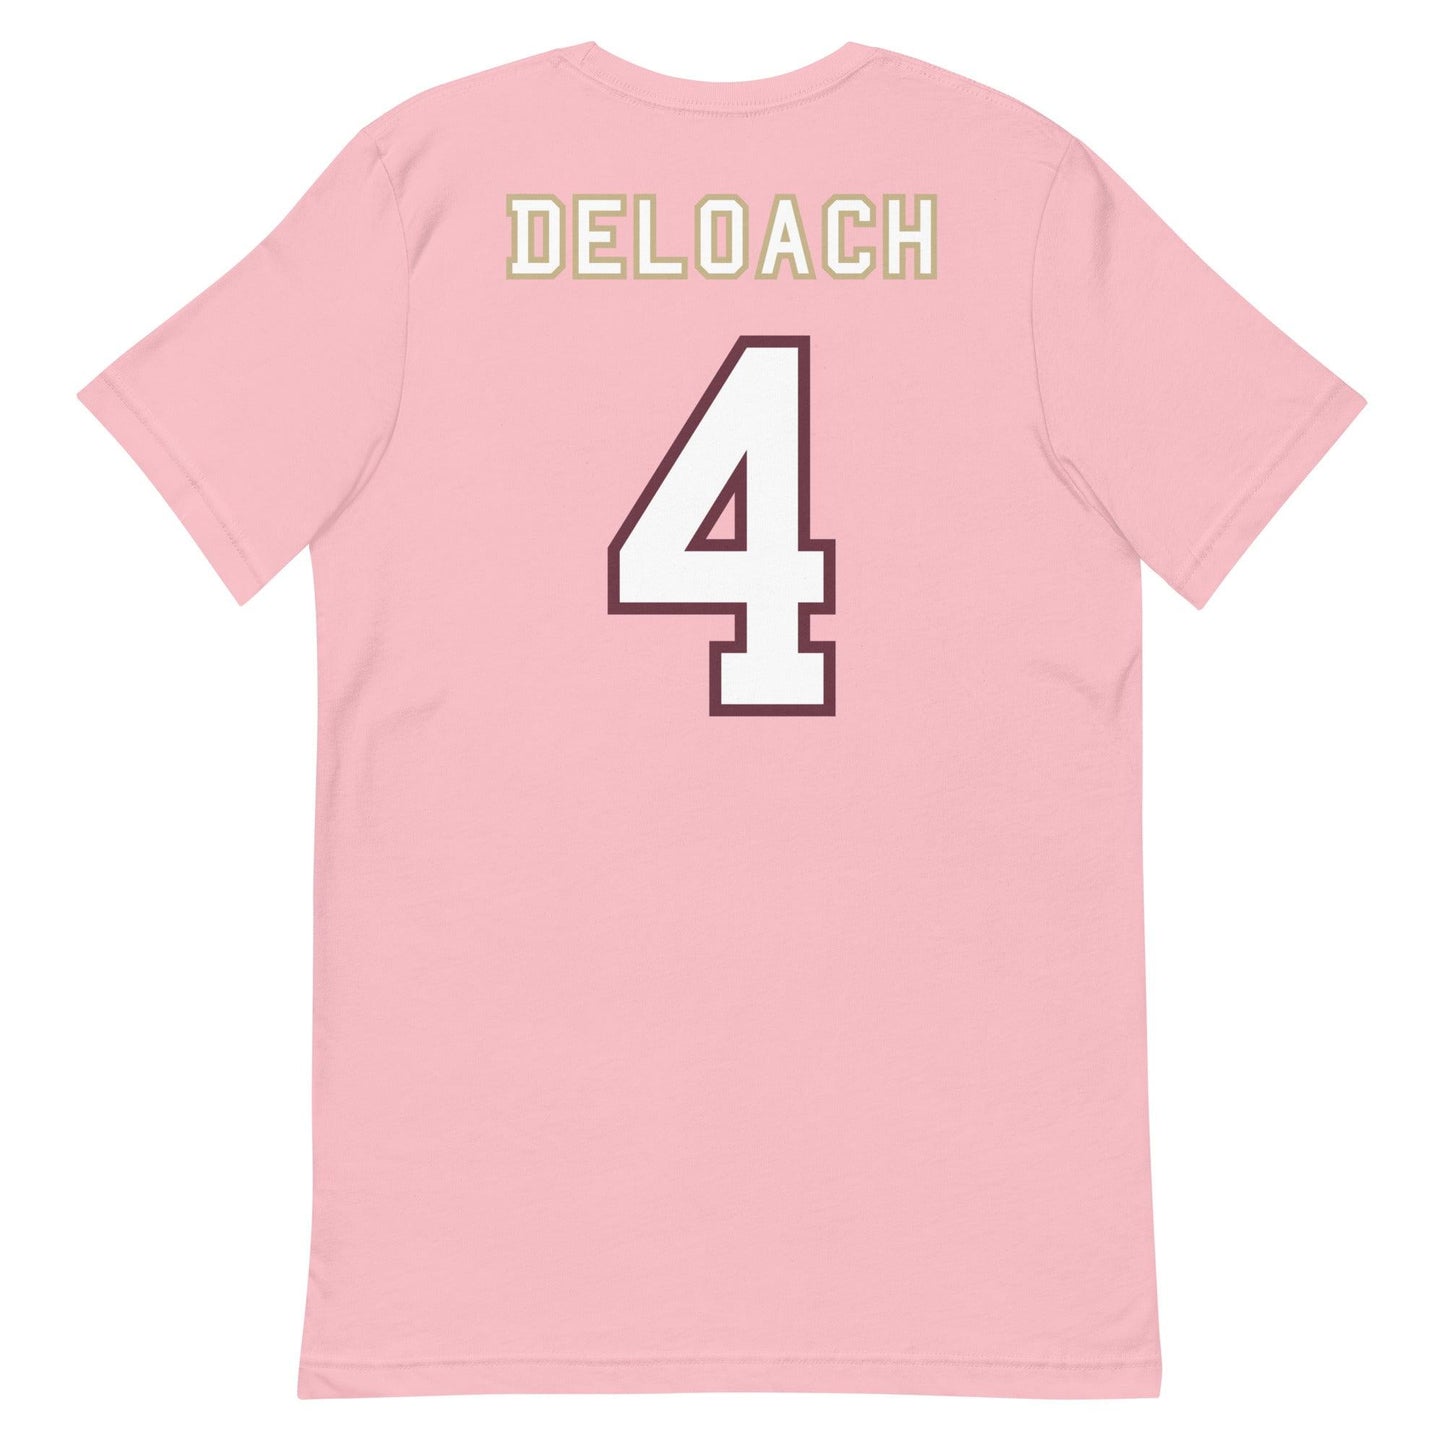 Kalen Deloach "Jersey" t-shirt - Fan Arch